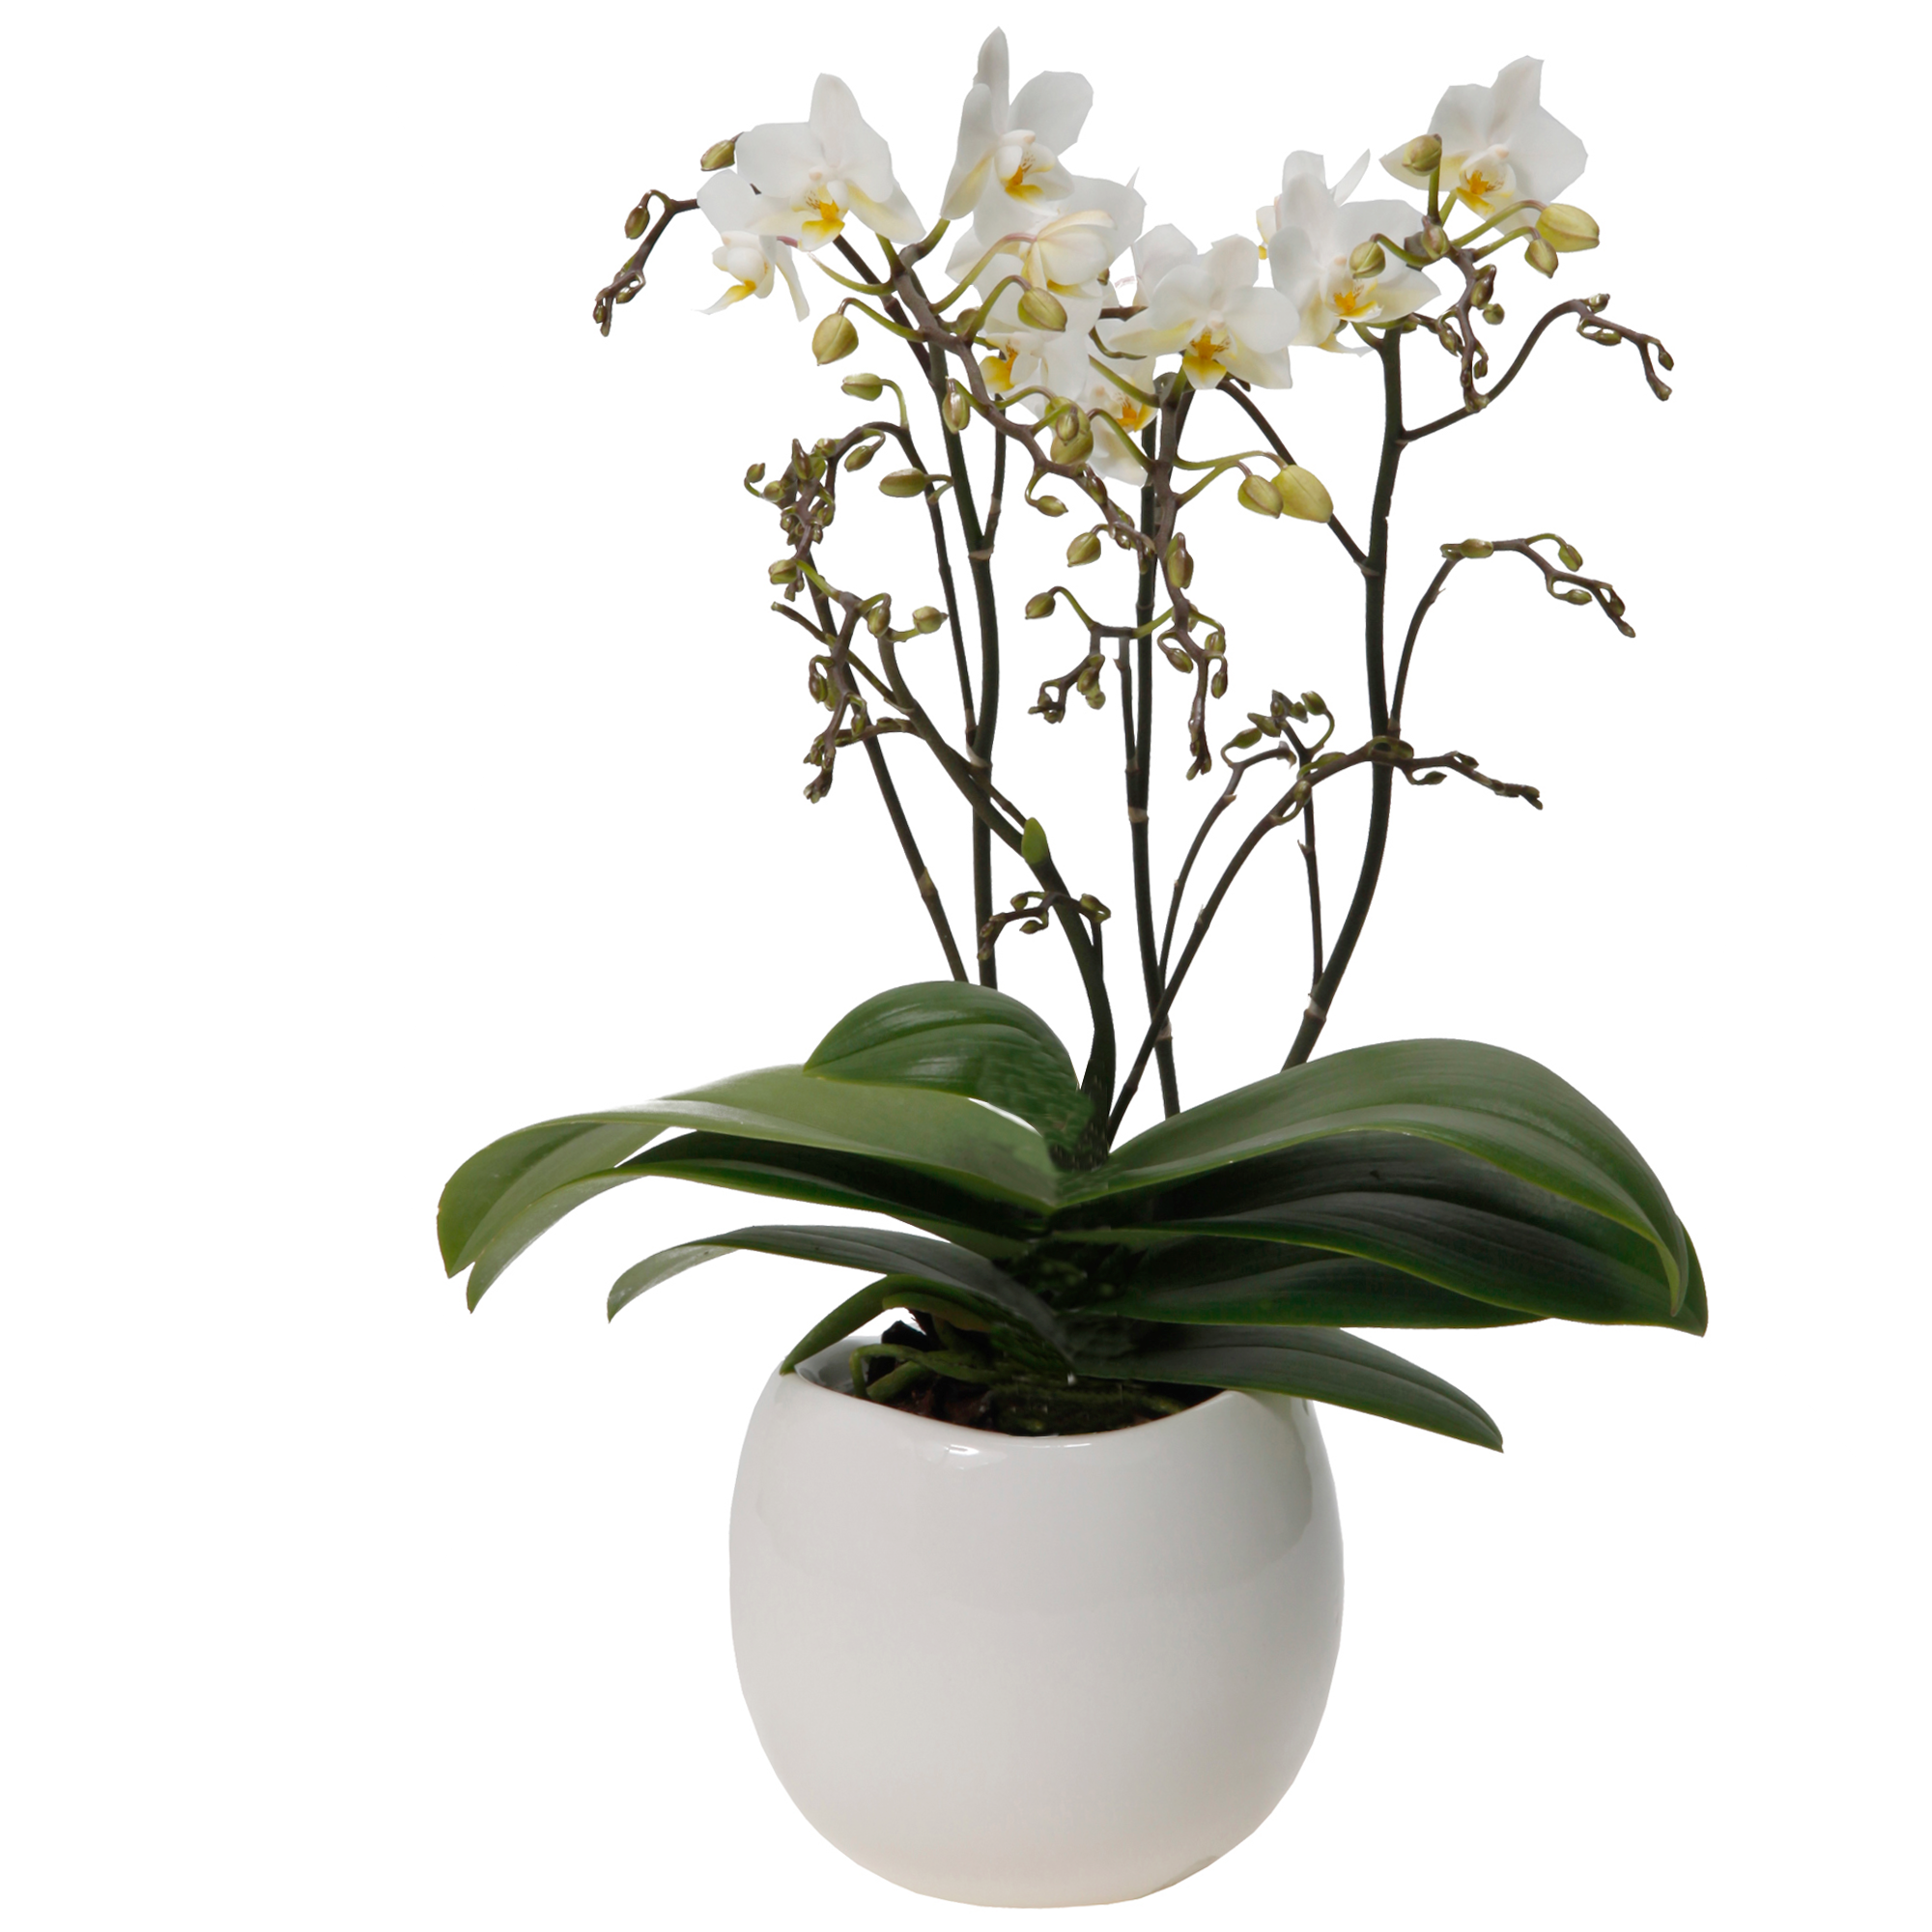 Schmetterlingsorchidee 4 Rispen weiß, 9 cm Keramiktopf + product picture